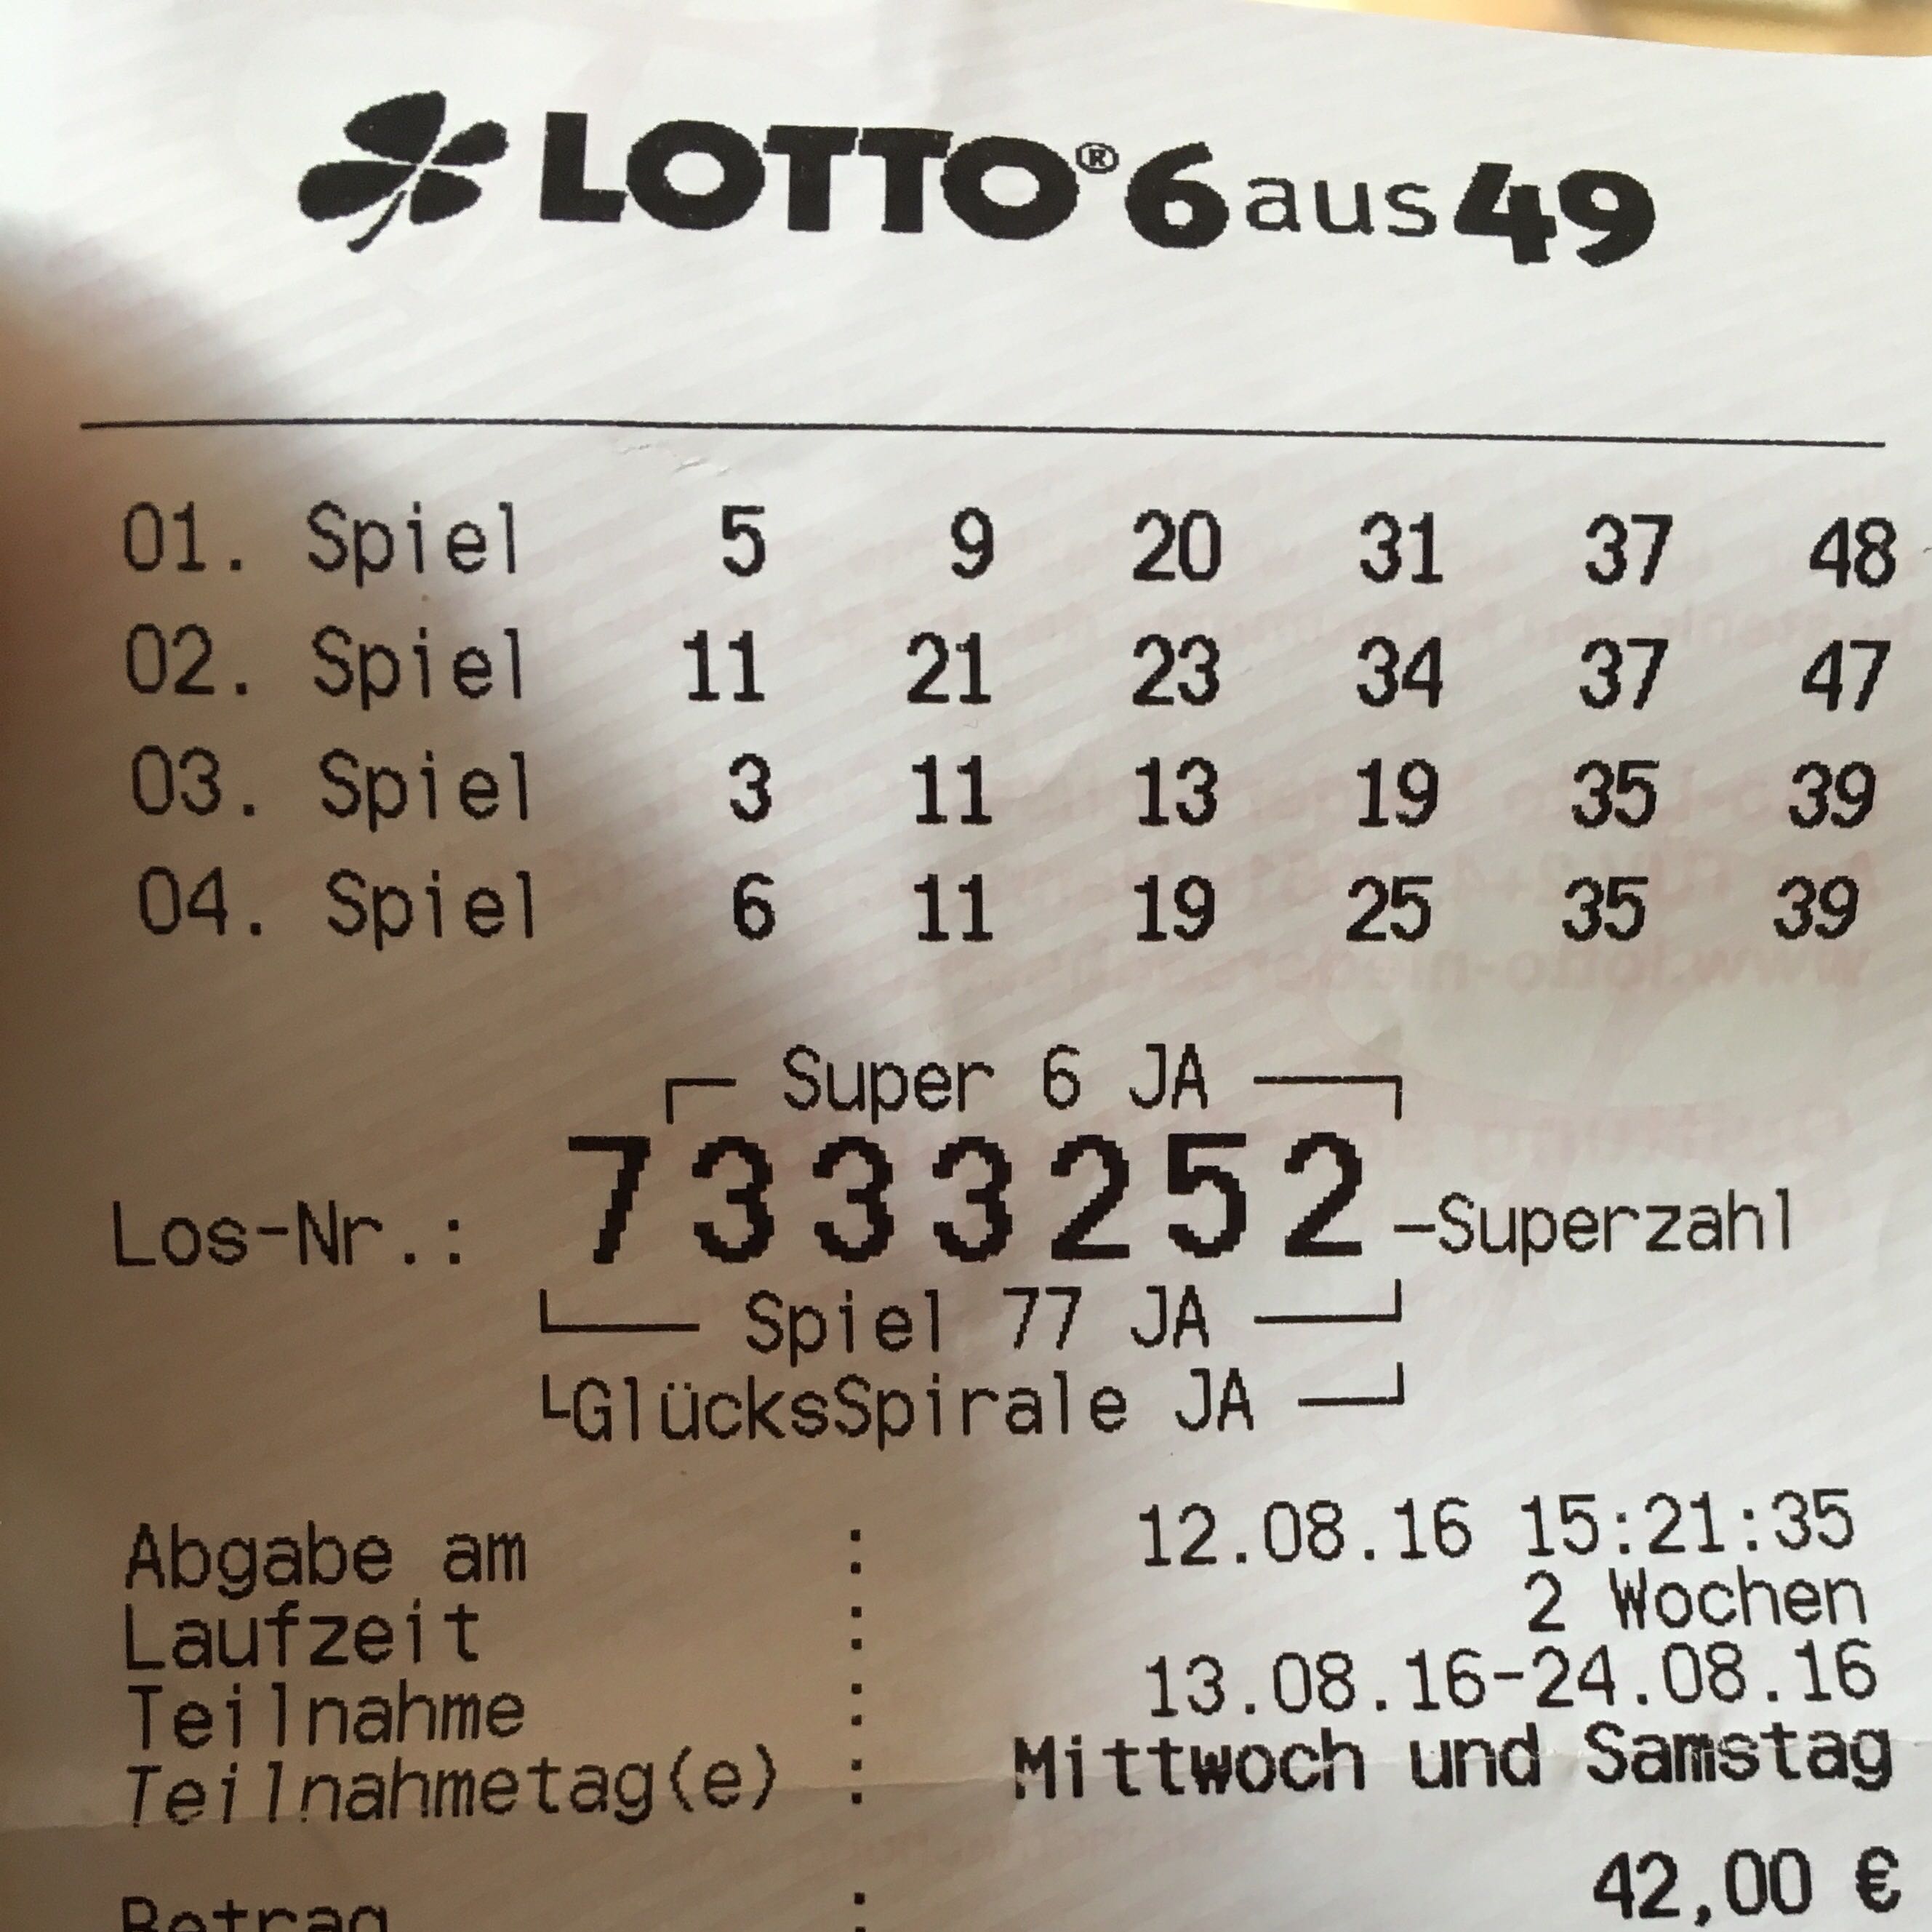 Die 6 HГ¤ufigsten Lottozahlen